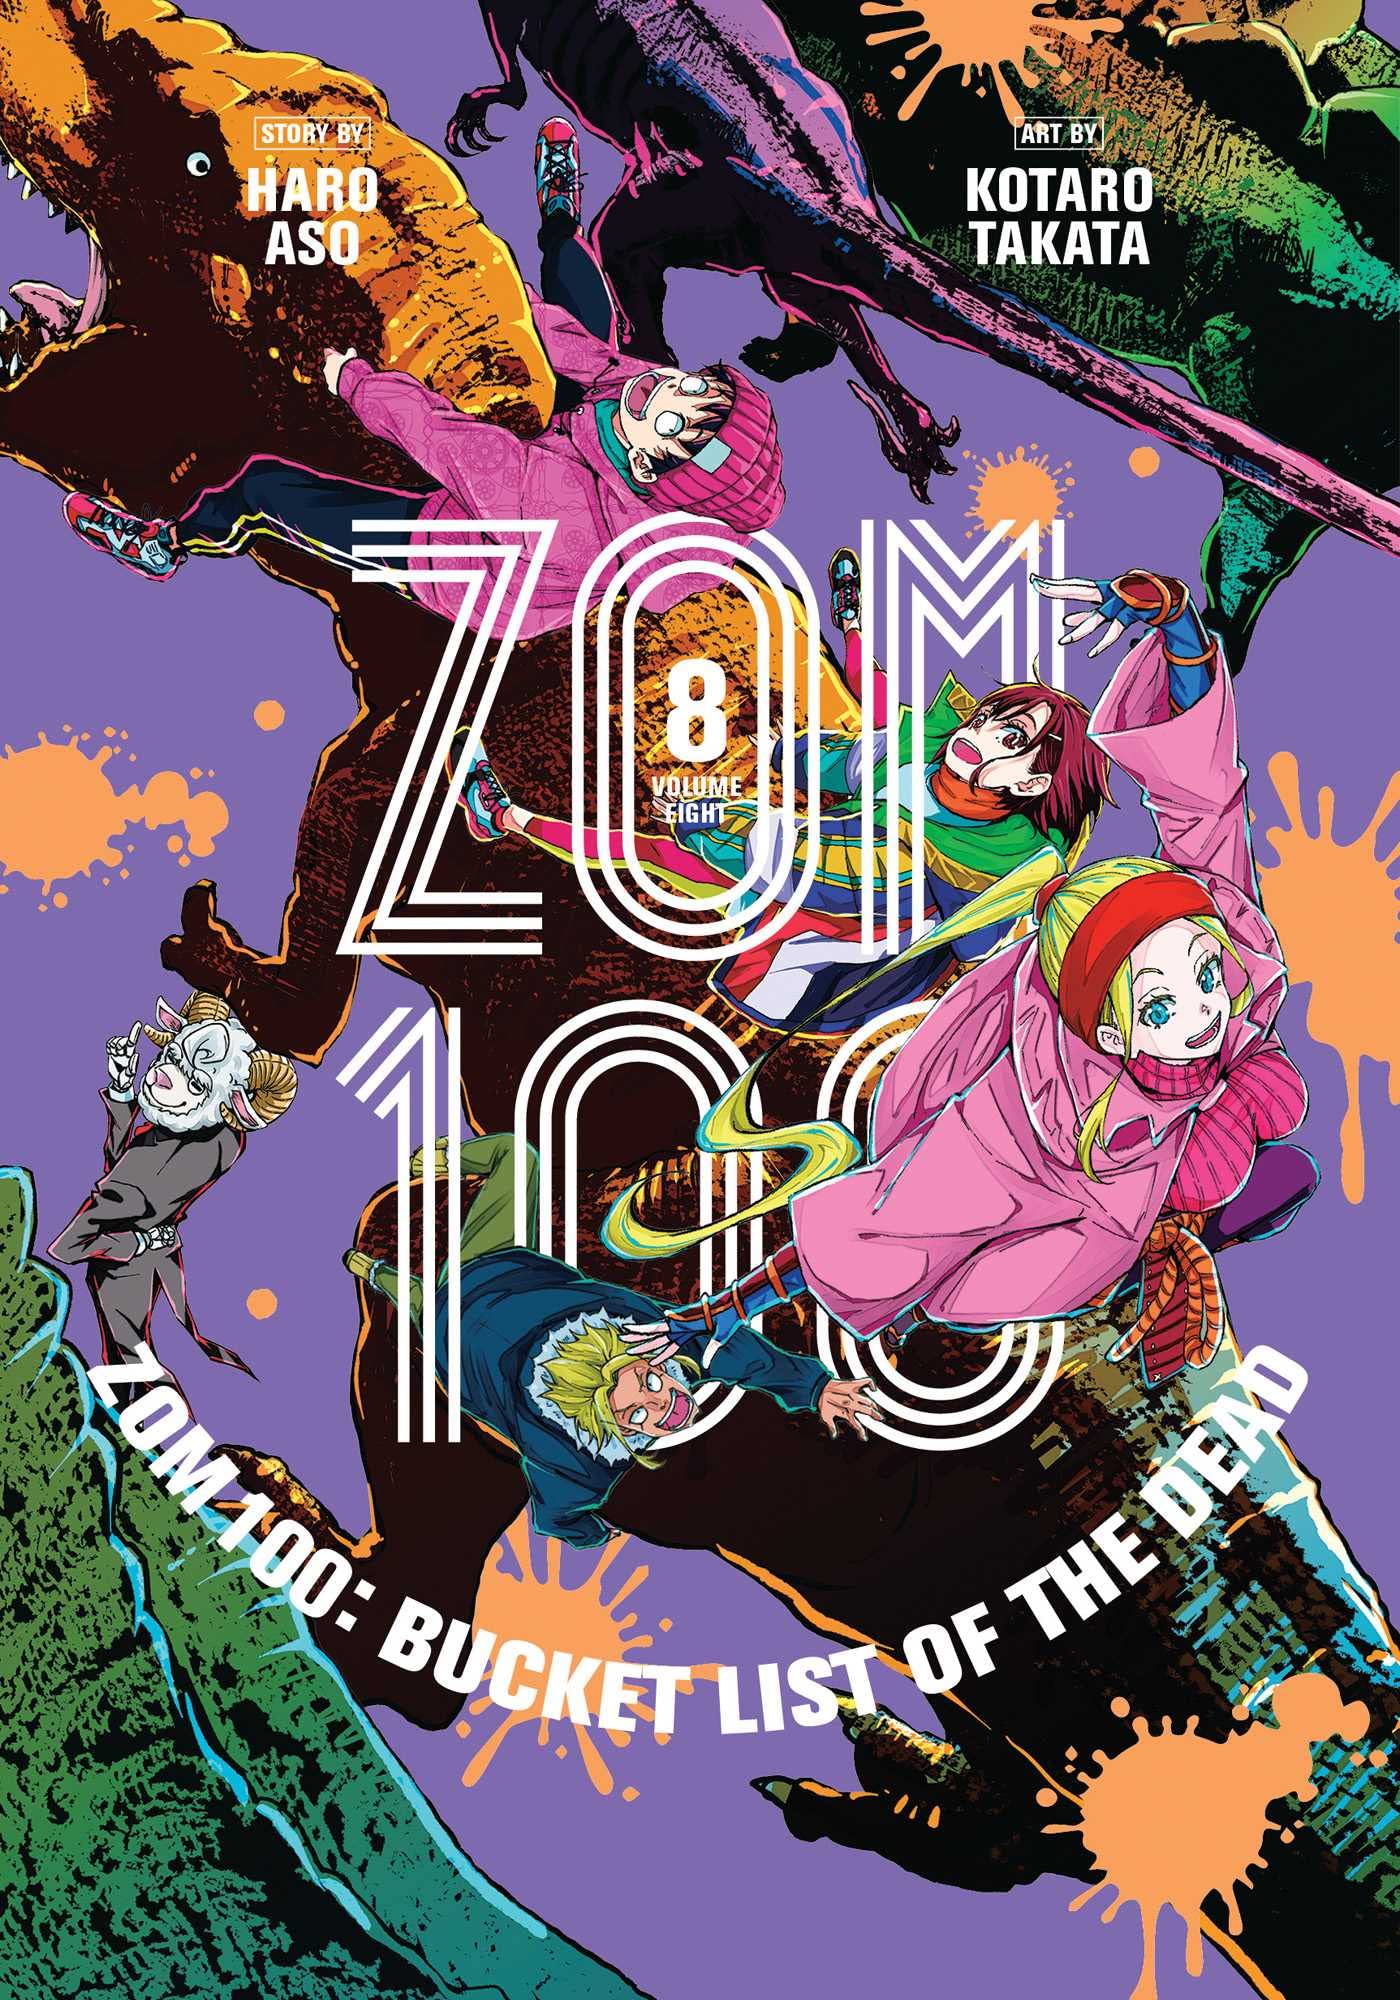 Zom 100 - Volume 8 | Haro Aso